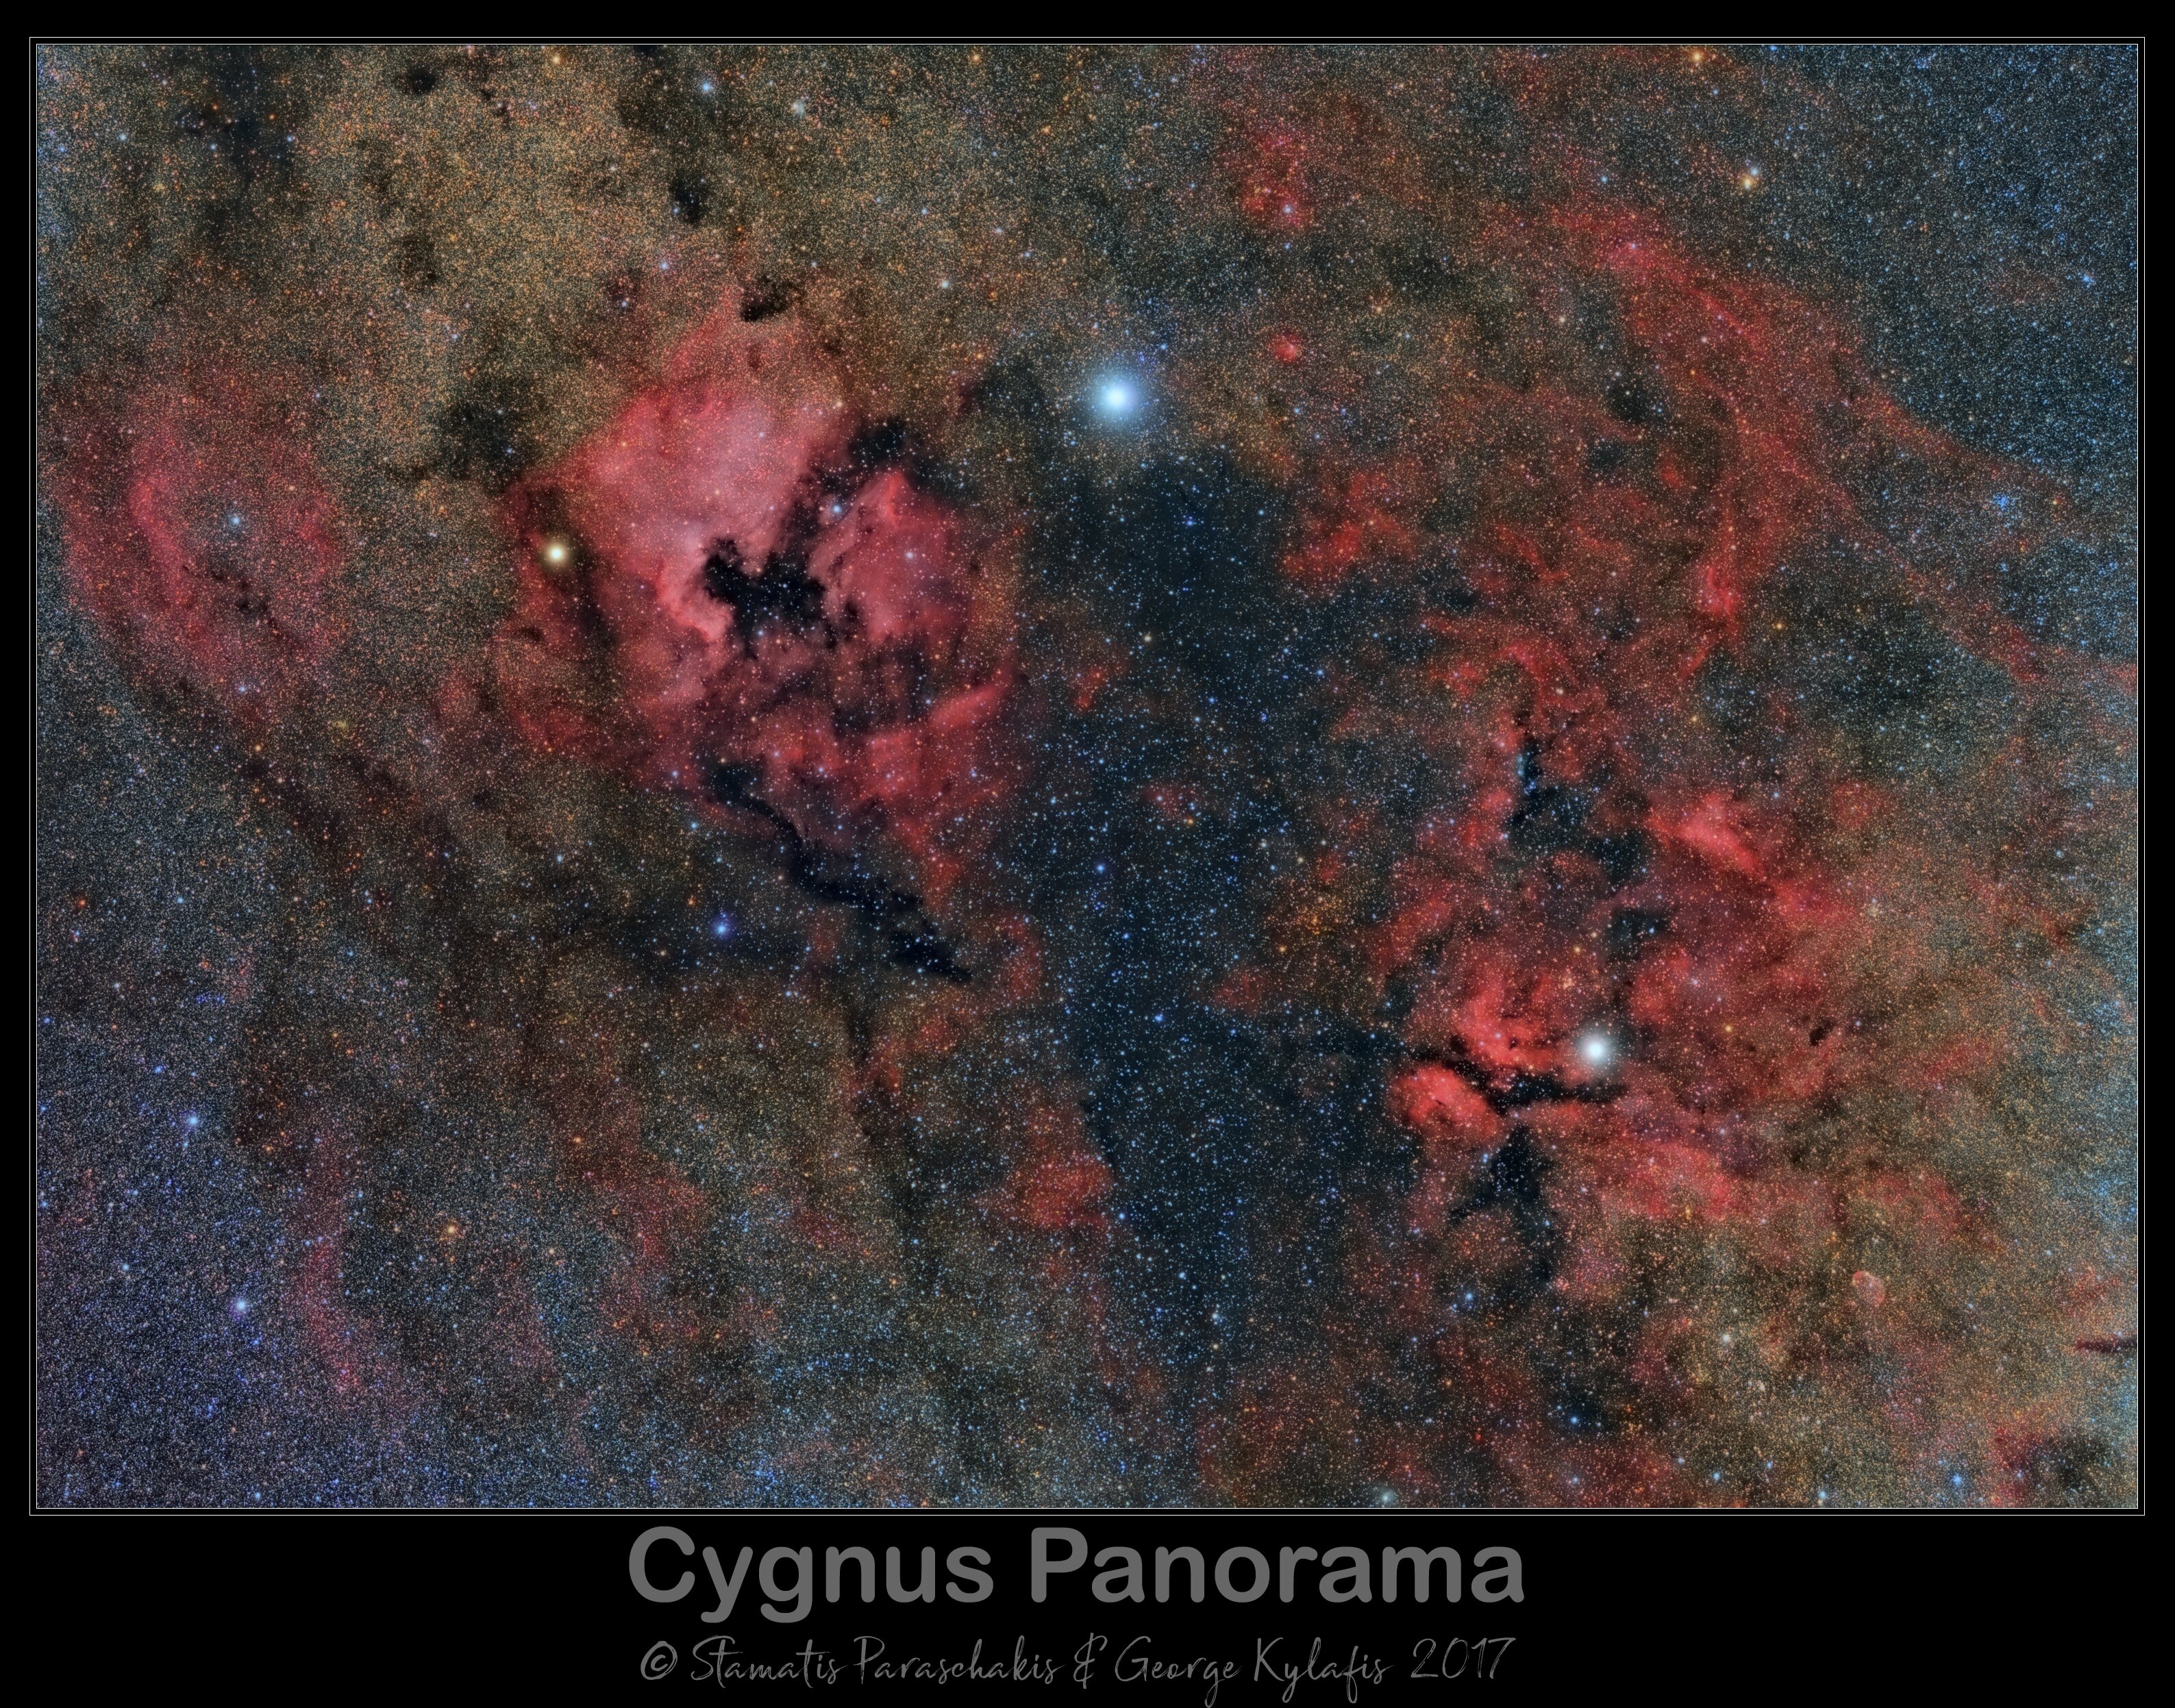 Cygnus Panorama in HaRGB